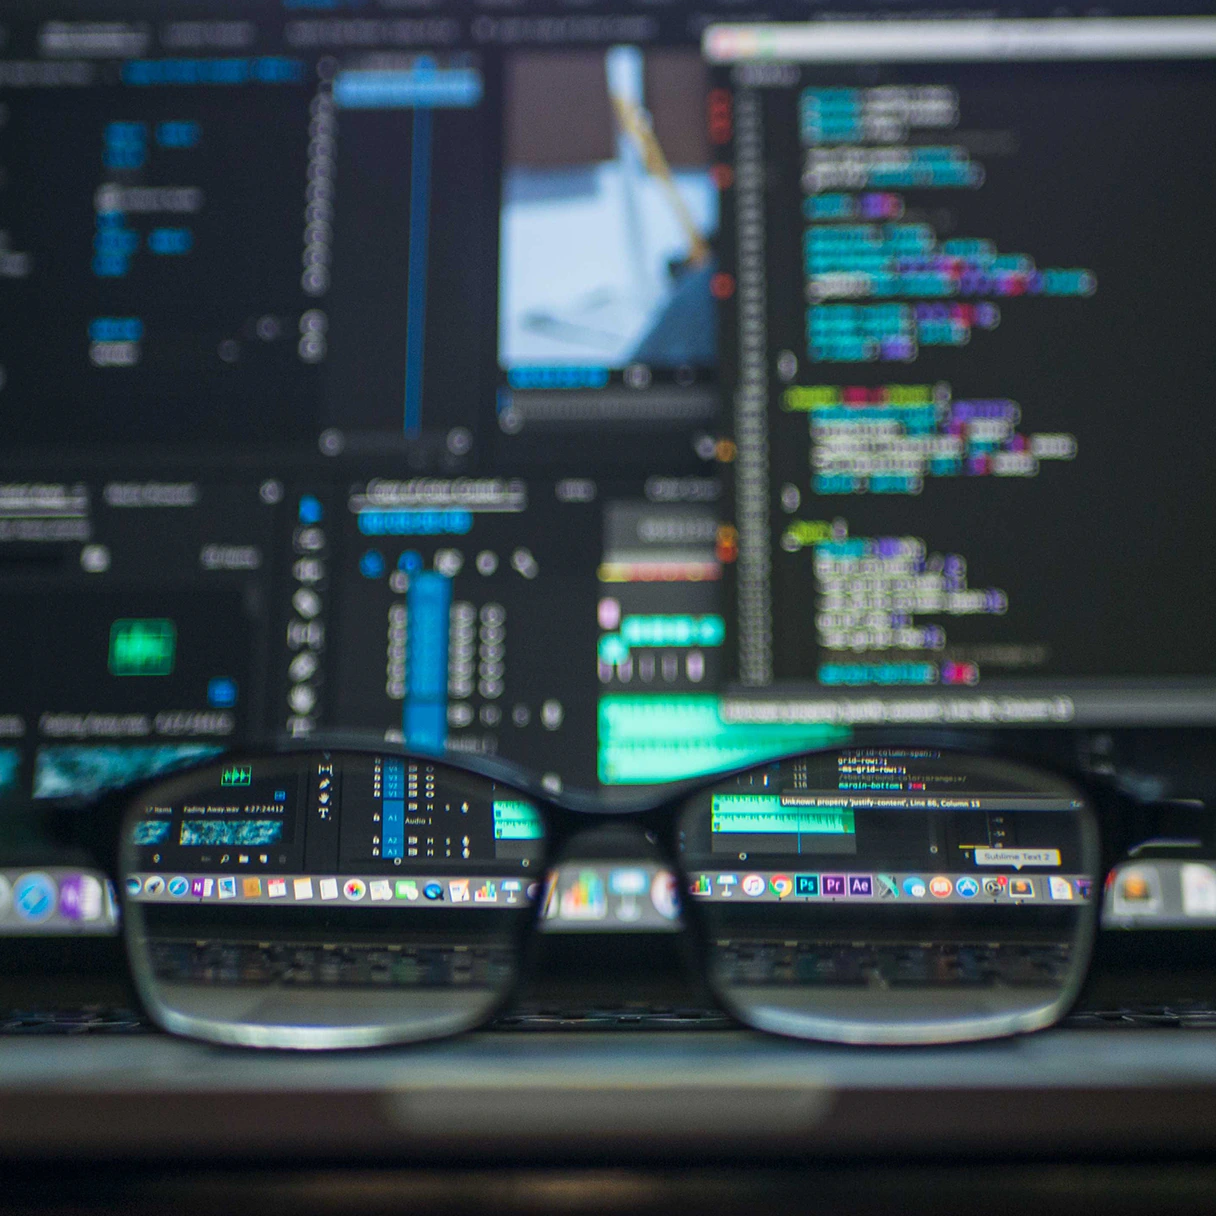 Schreibtisch eines Programmierers auf dem eine Brille liegt. Der Hintergrund ist unscharf, es ist aber Programmierungs-Code zu erkennen.